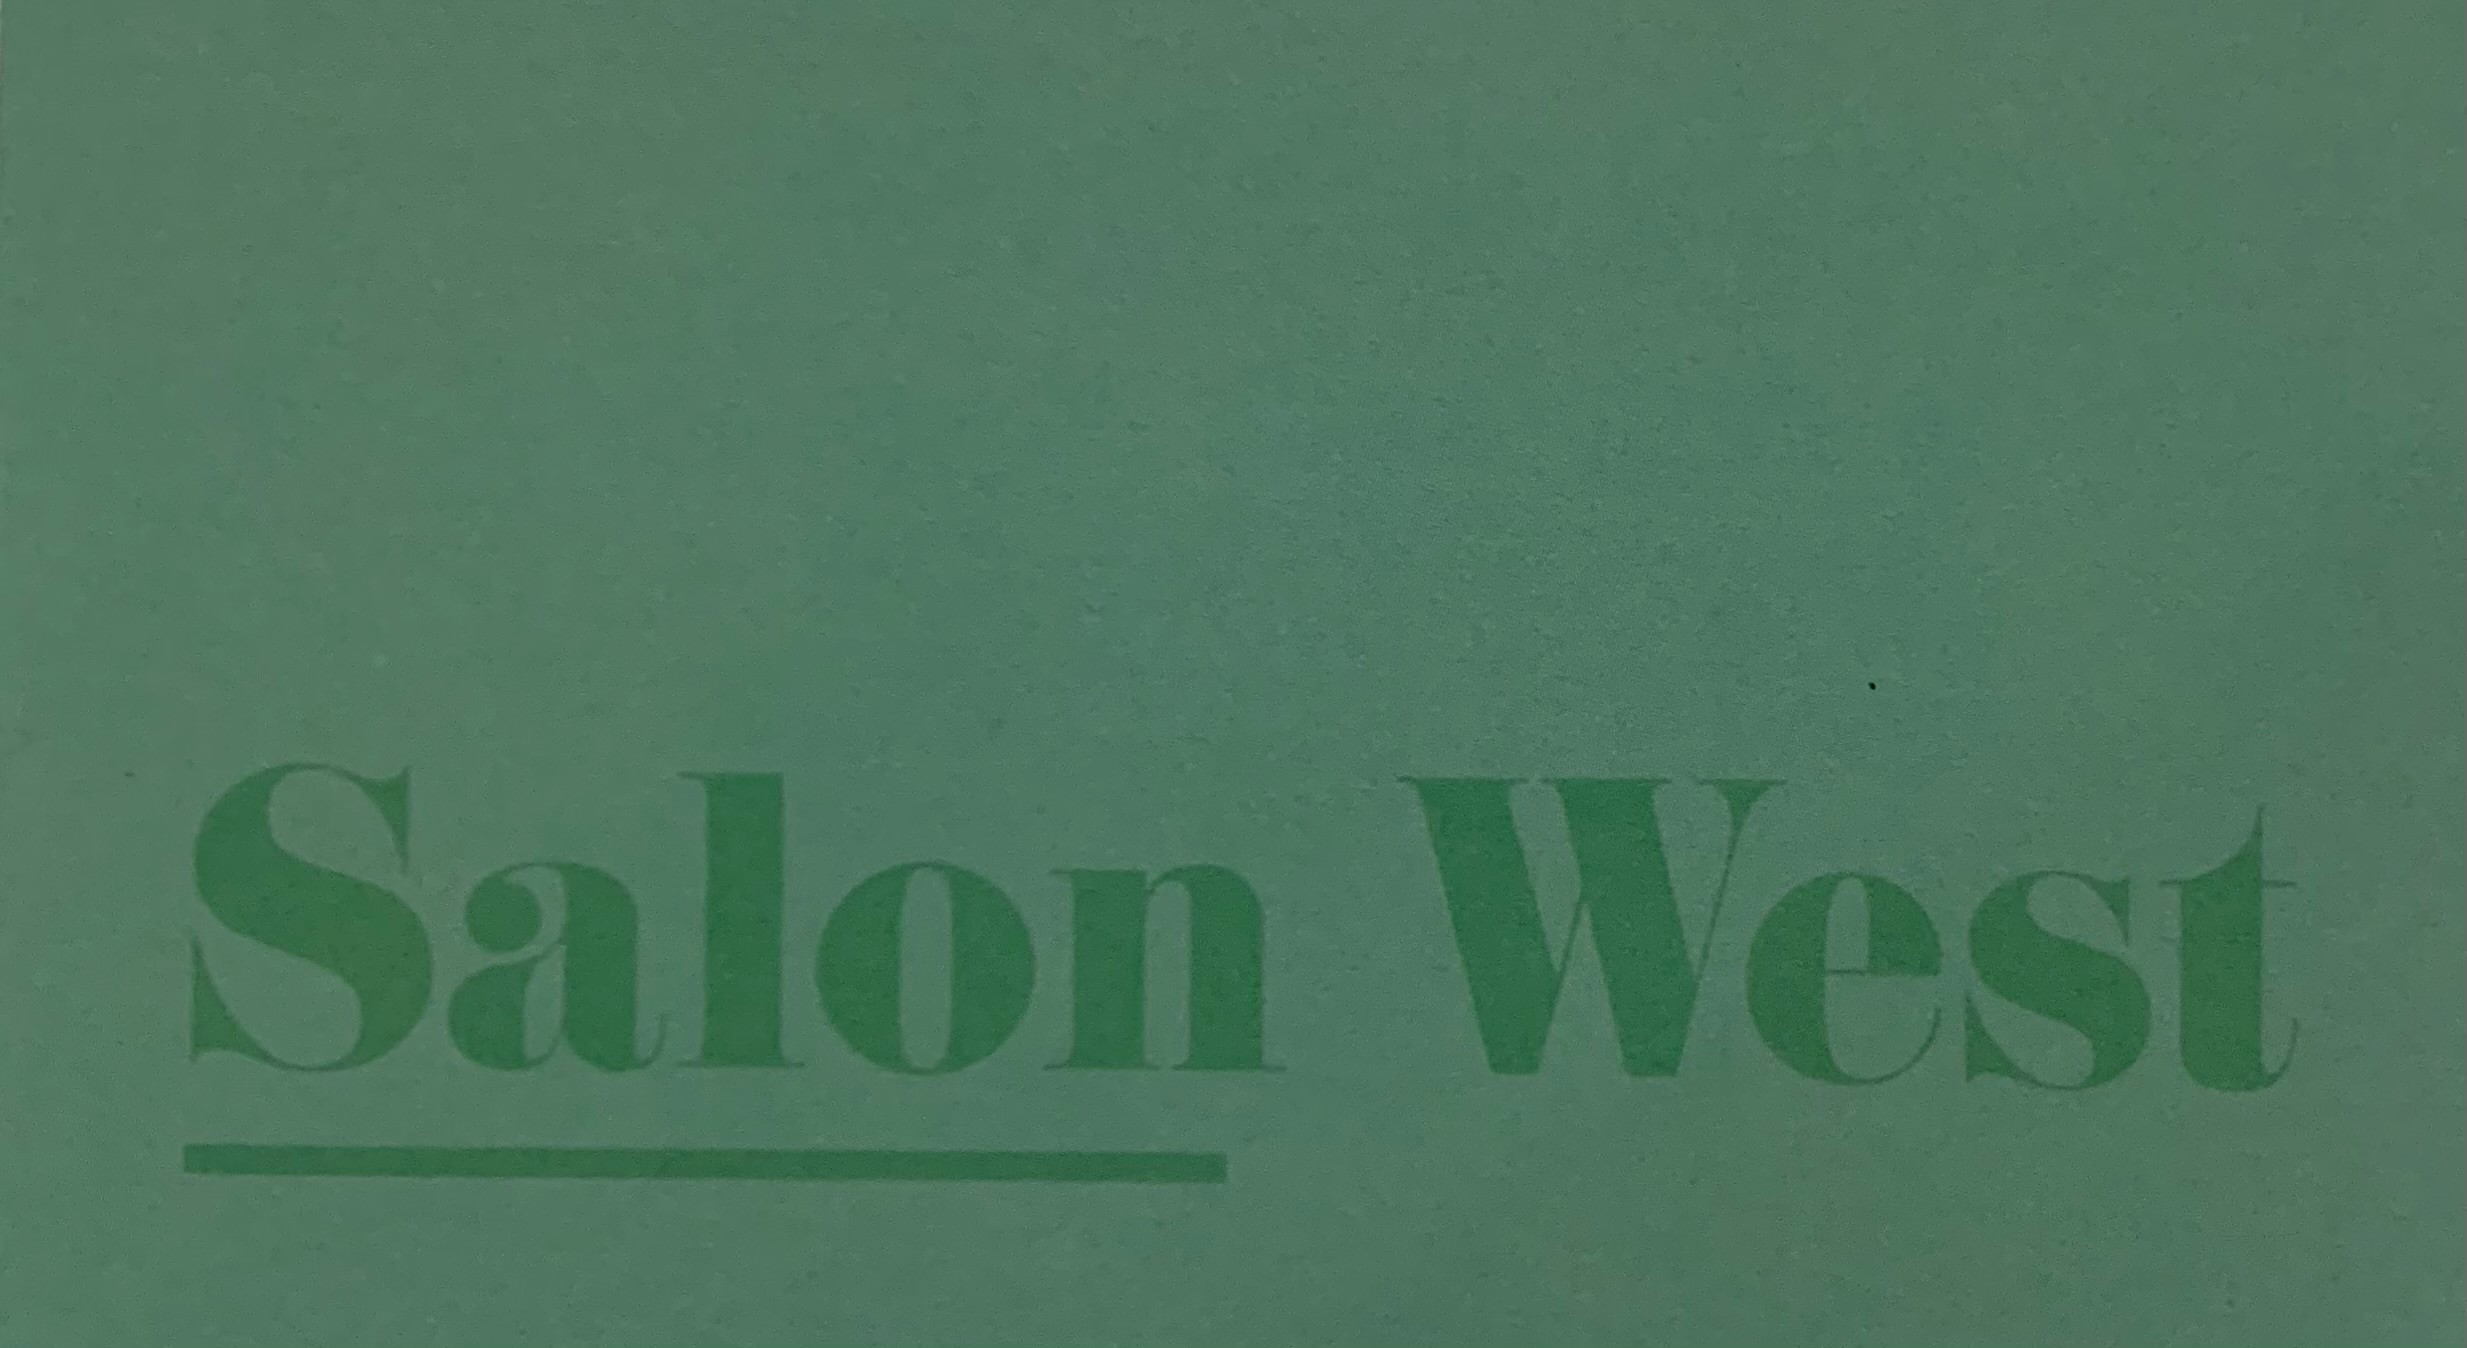 Salon West's Image